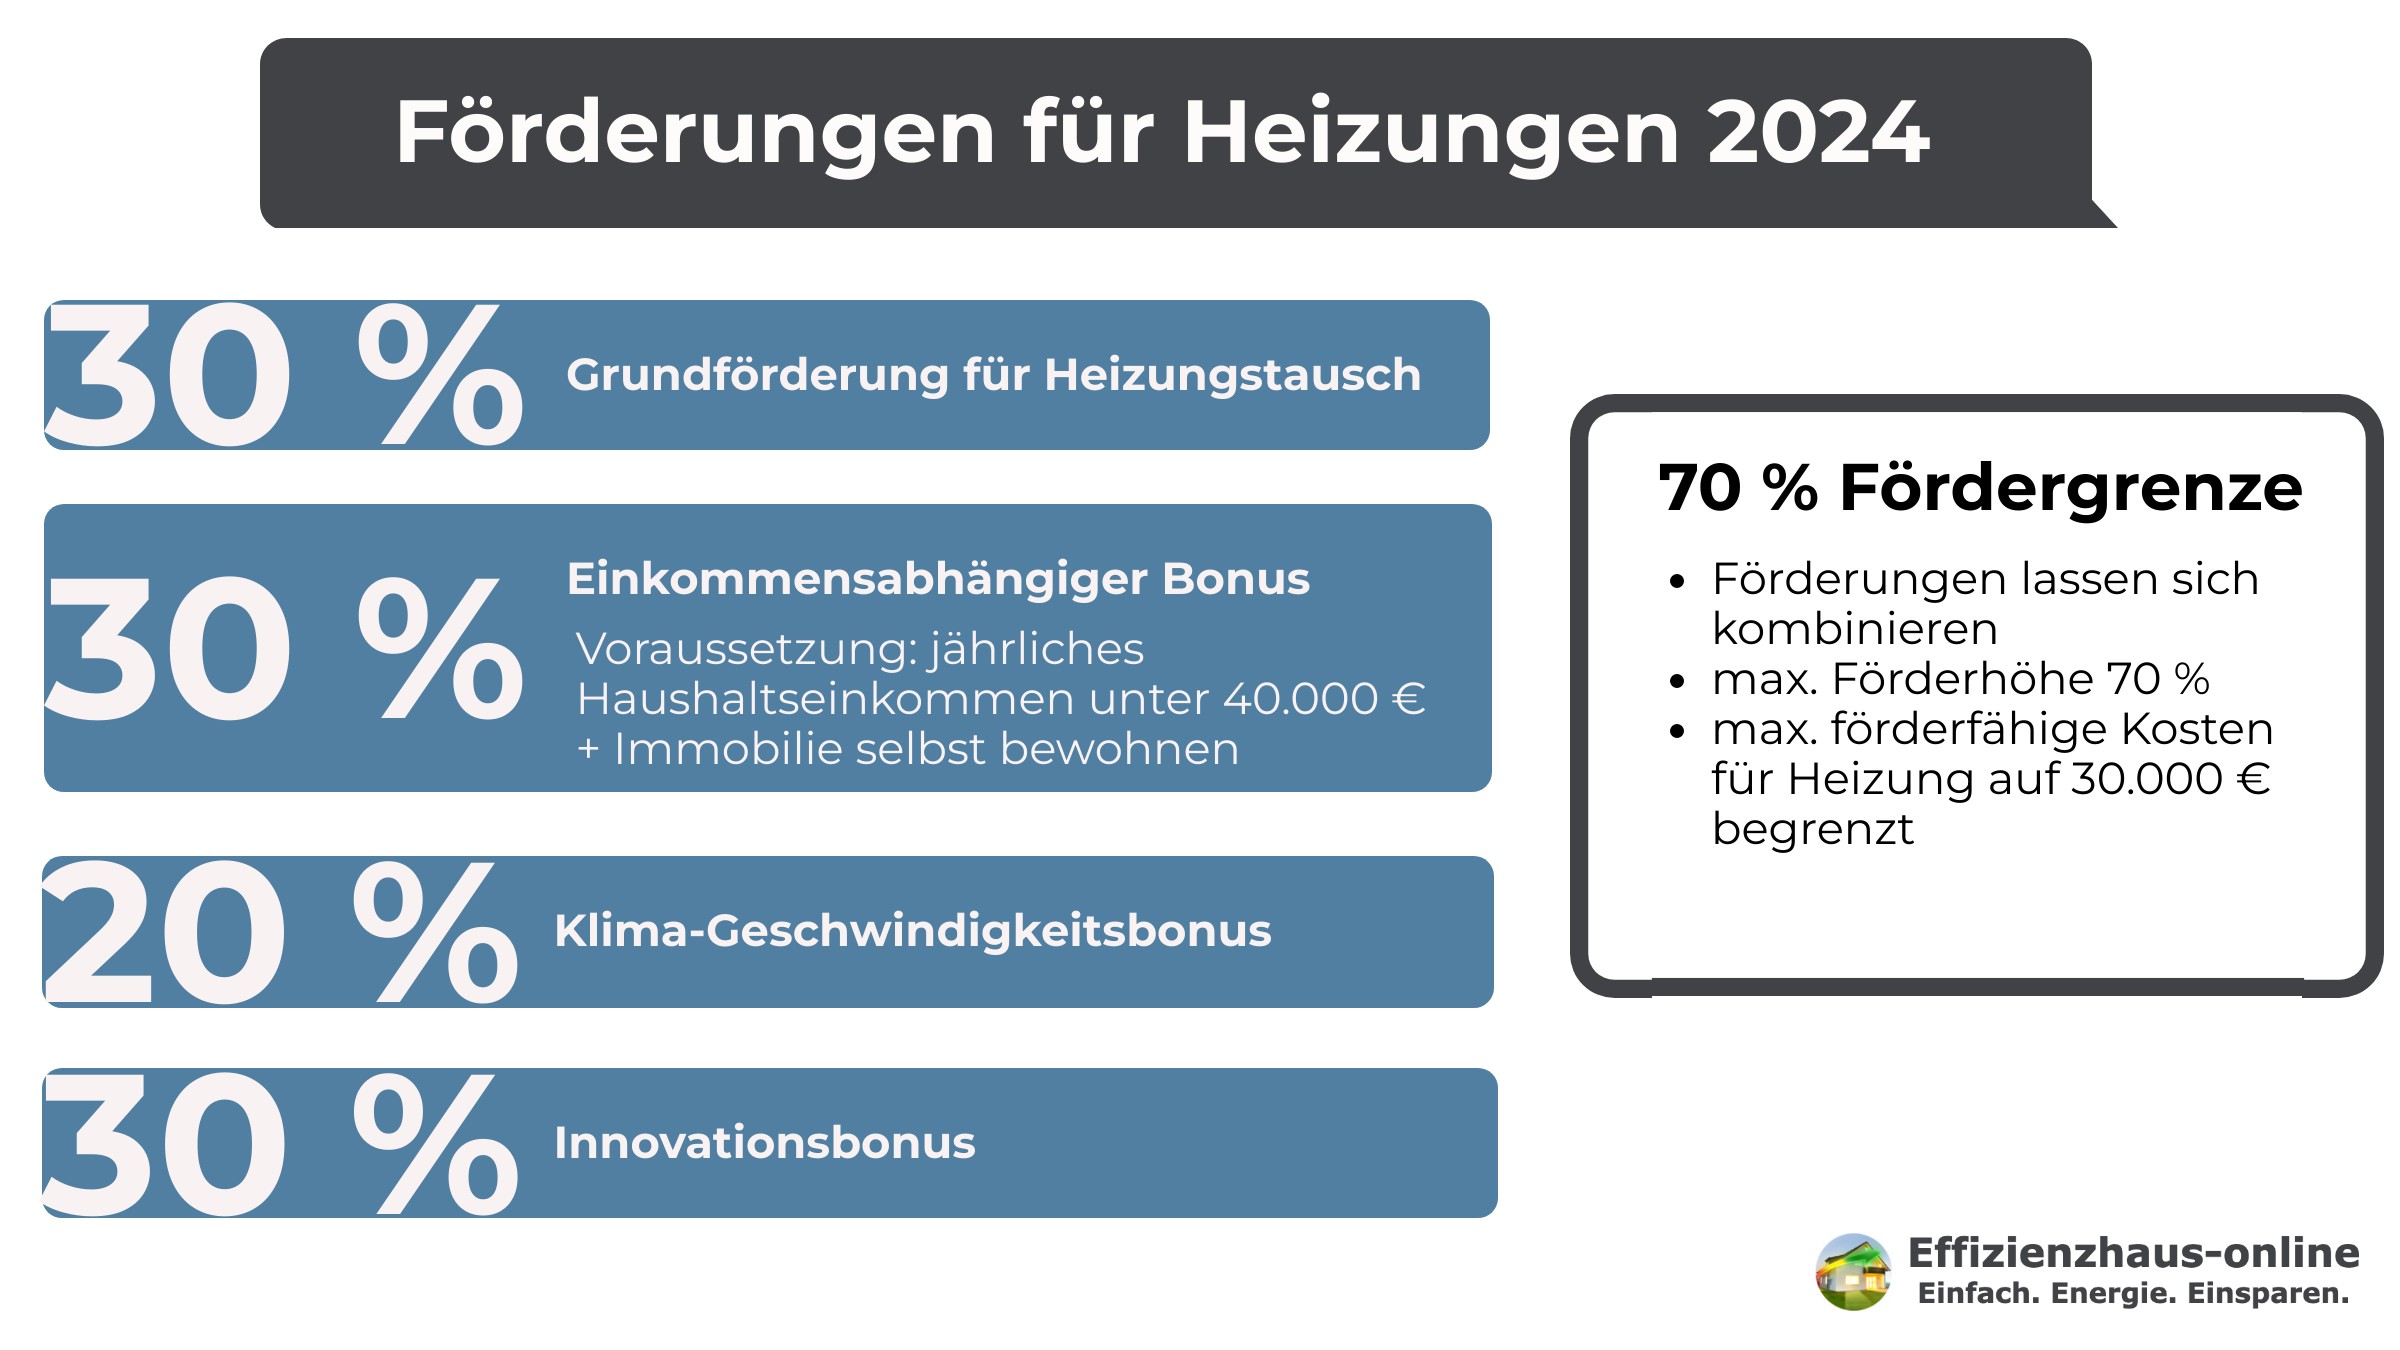 Wärmepumpe Altbau: Zu sehen sind die aktuellen Förderrichtlinien für Heizungen 2024